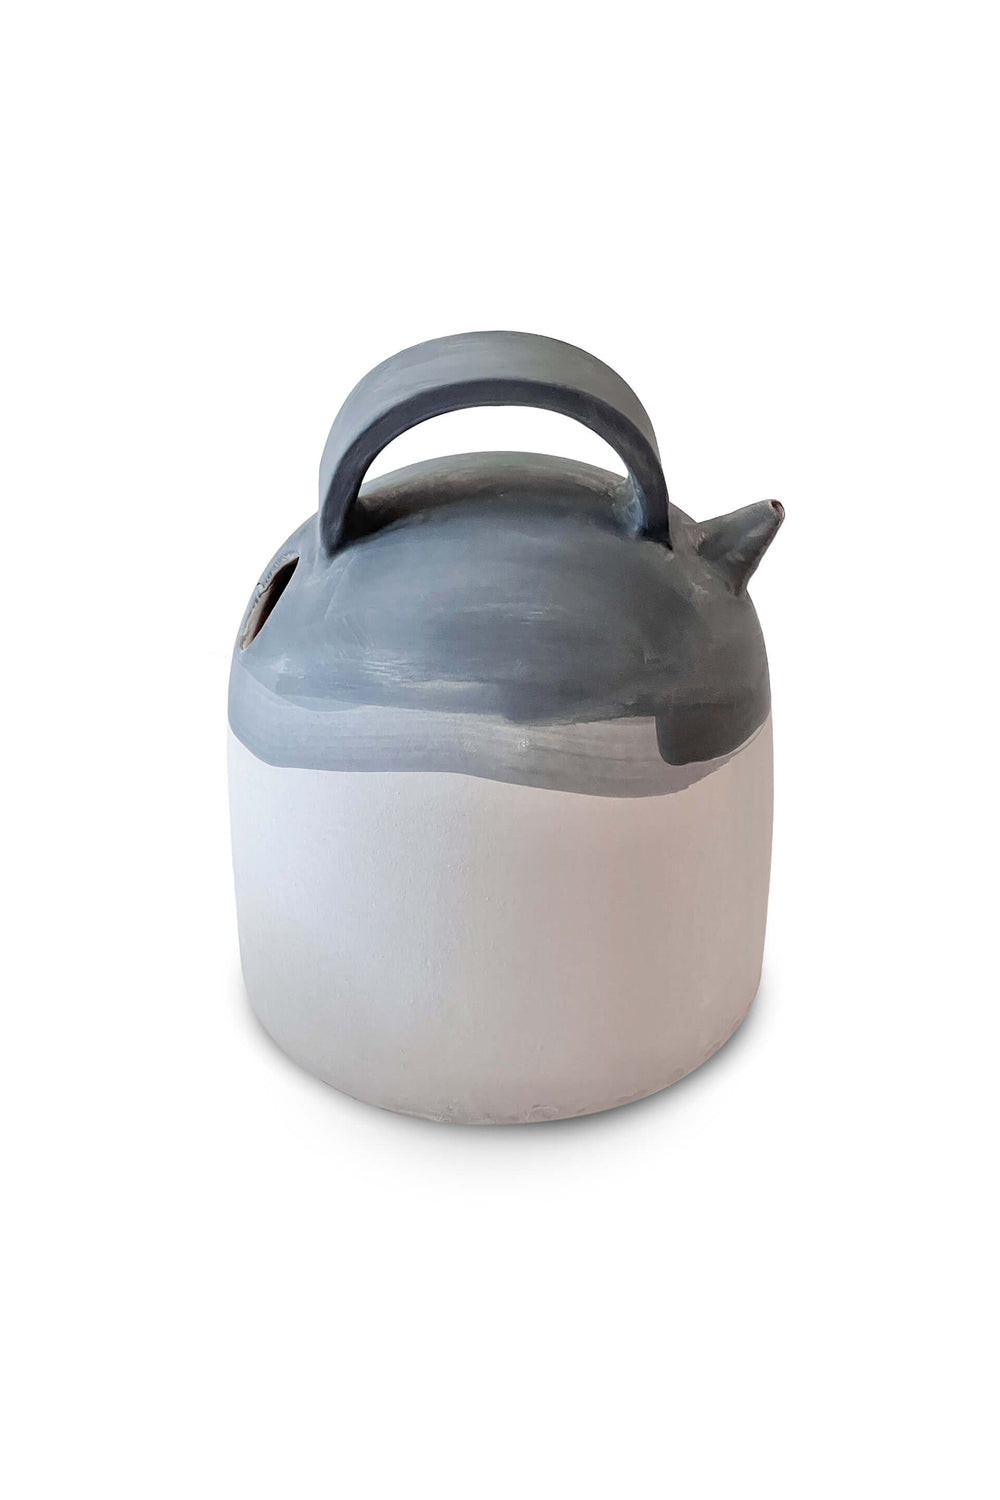 Handmade clay jug